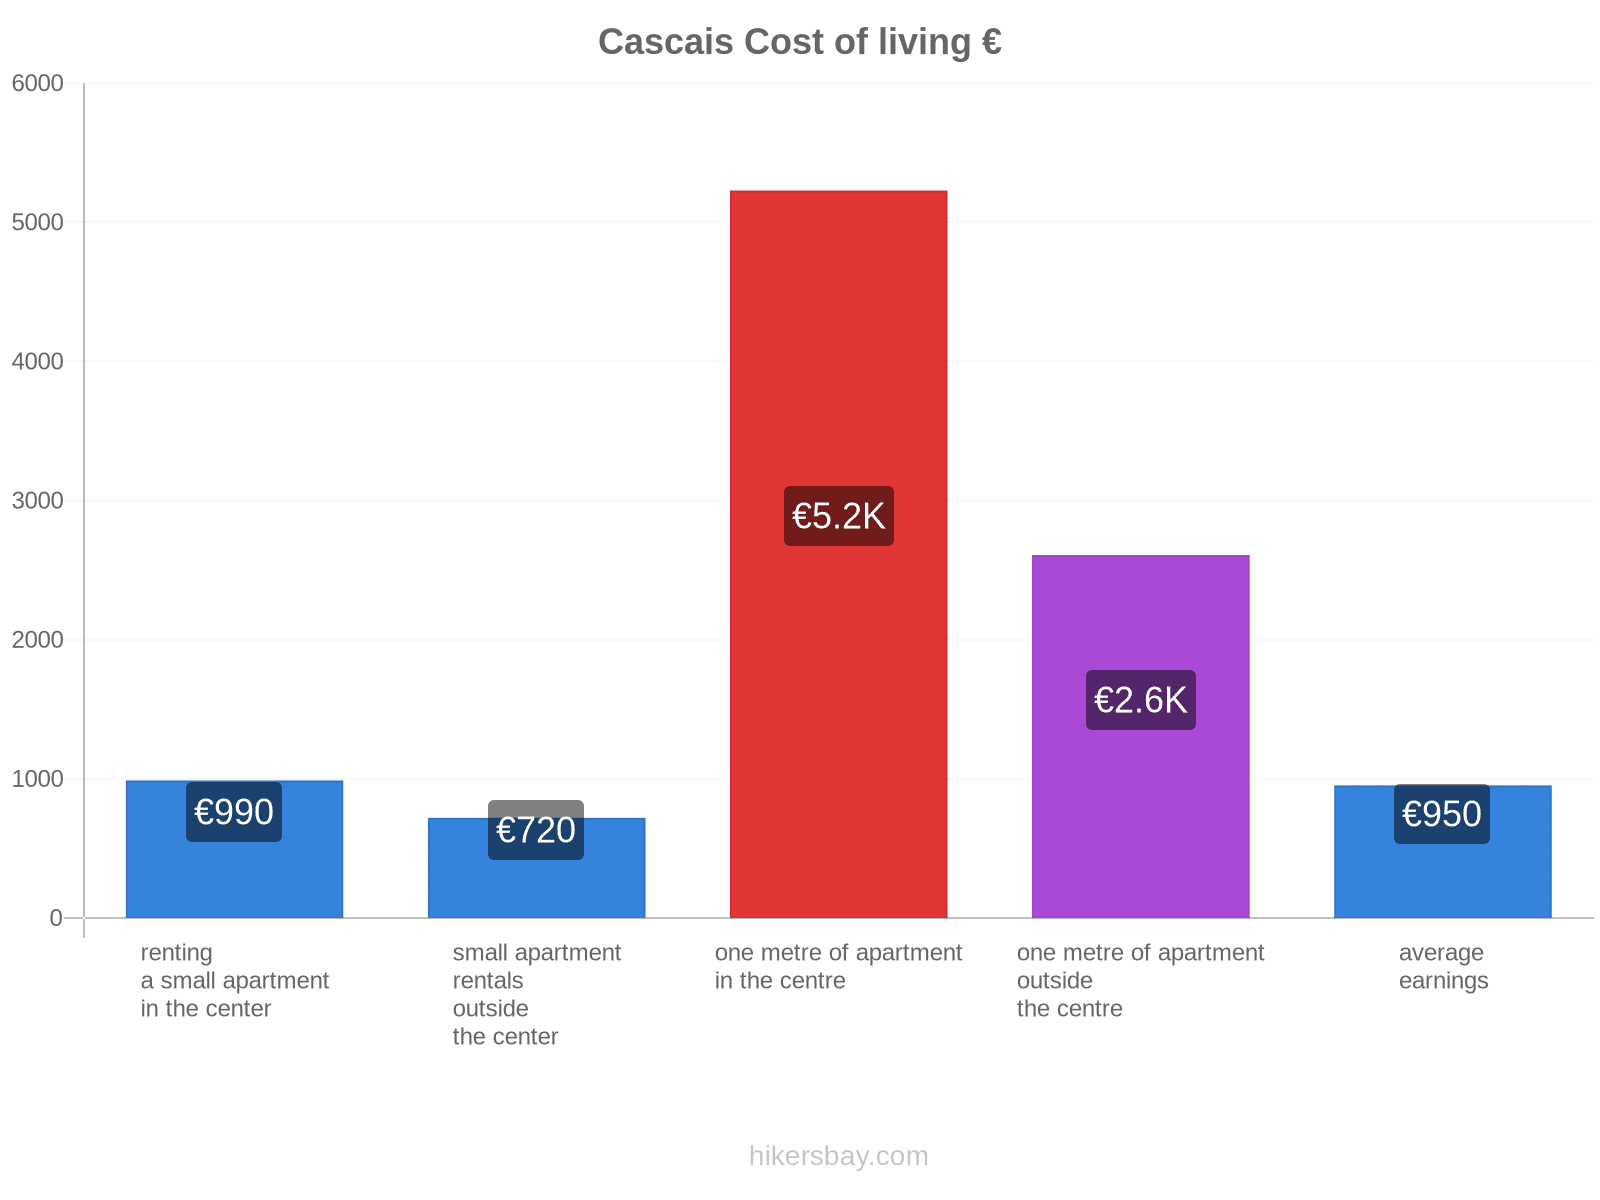 Cascais cost of living hikersbay.com